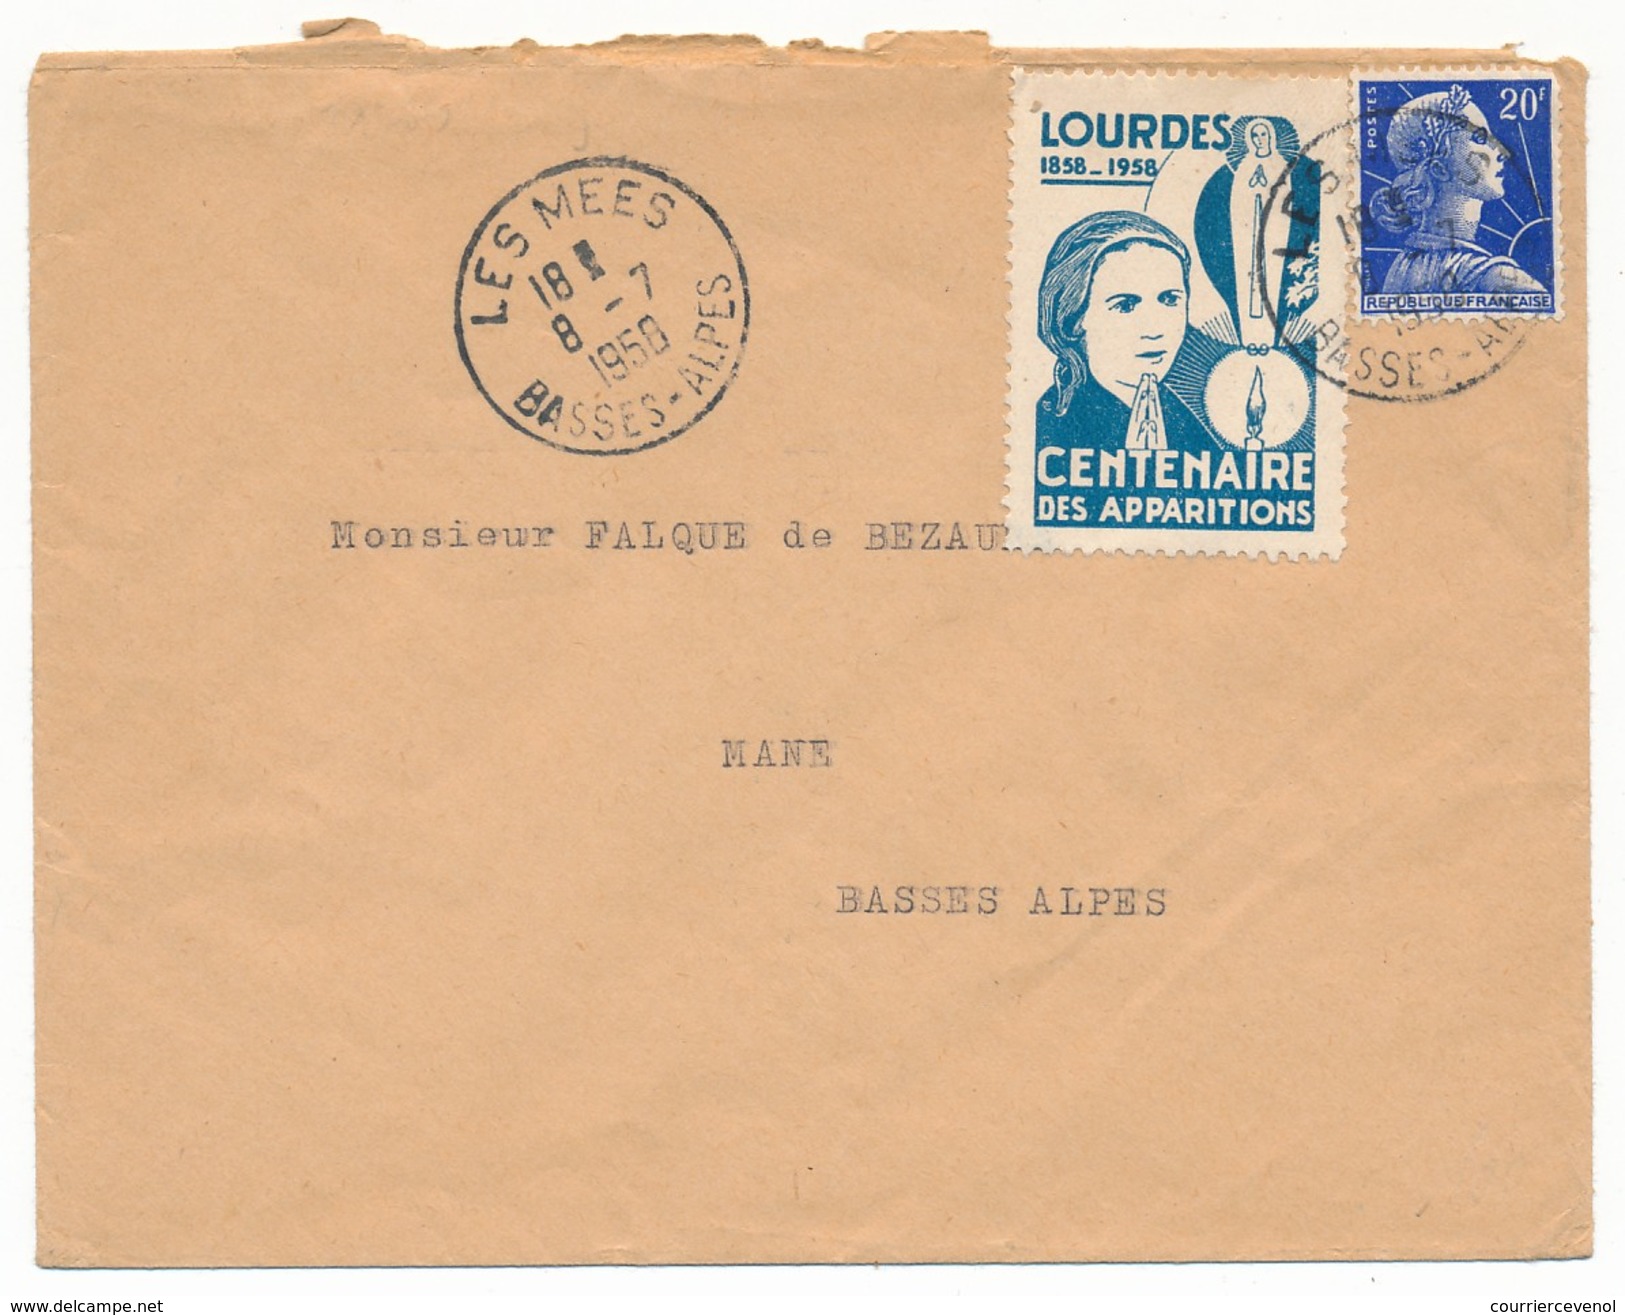 FRANCE => Vignette "LOURDES - Centenaire Des Apparitions" Sur Enveloppe - Les Mées Basses Alpes 1950 - Briefe U. Dokumente